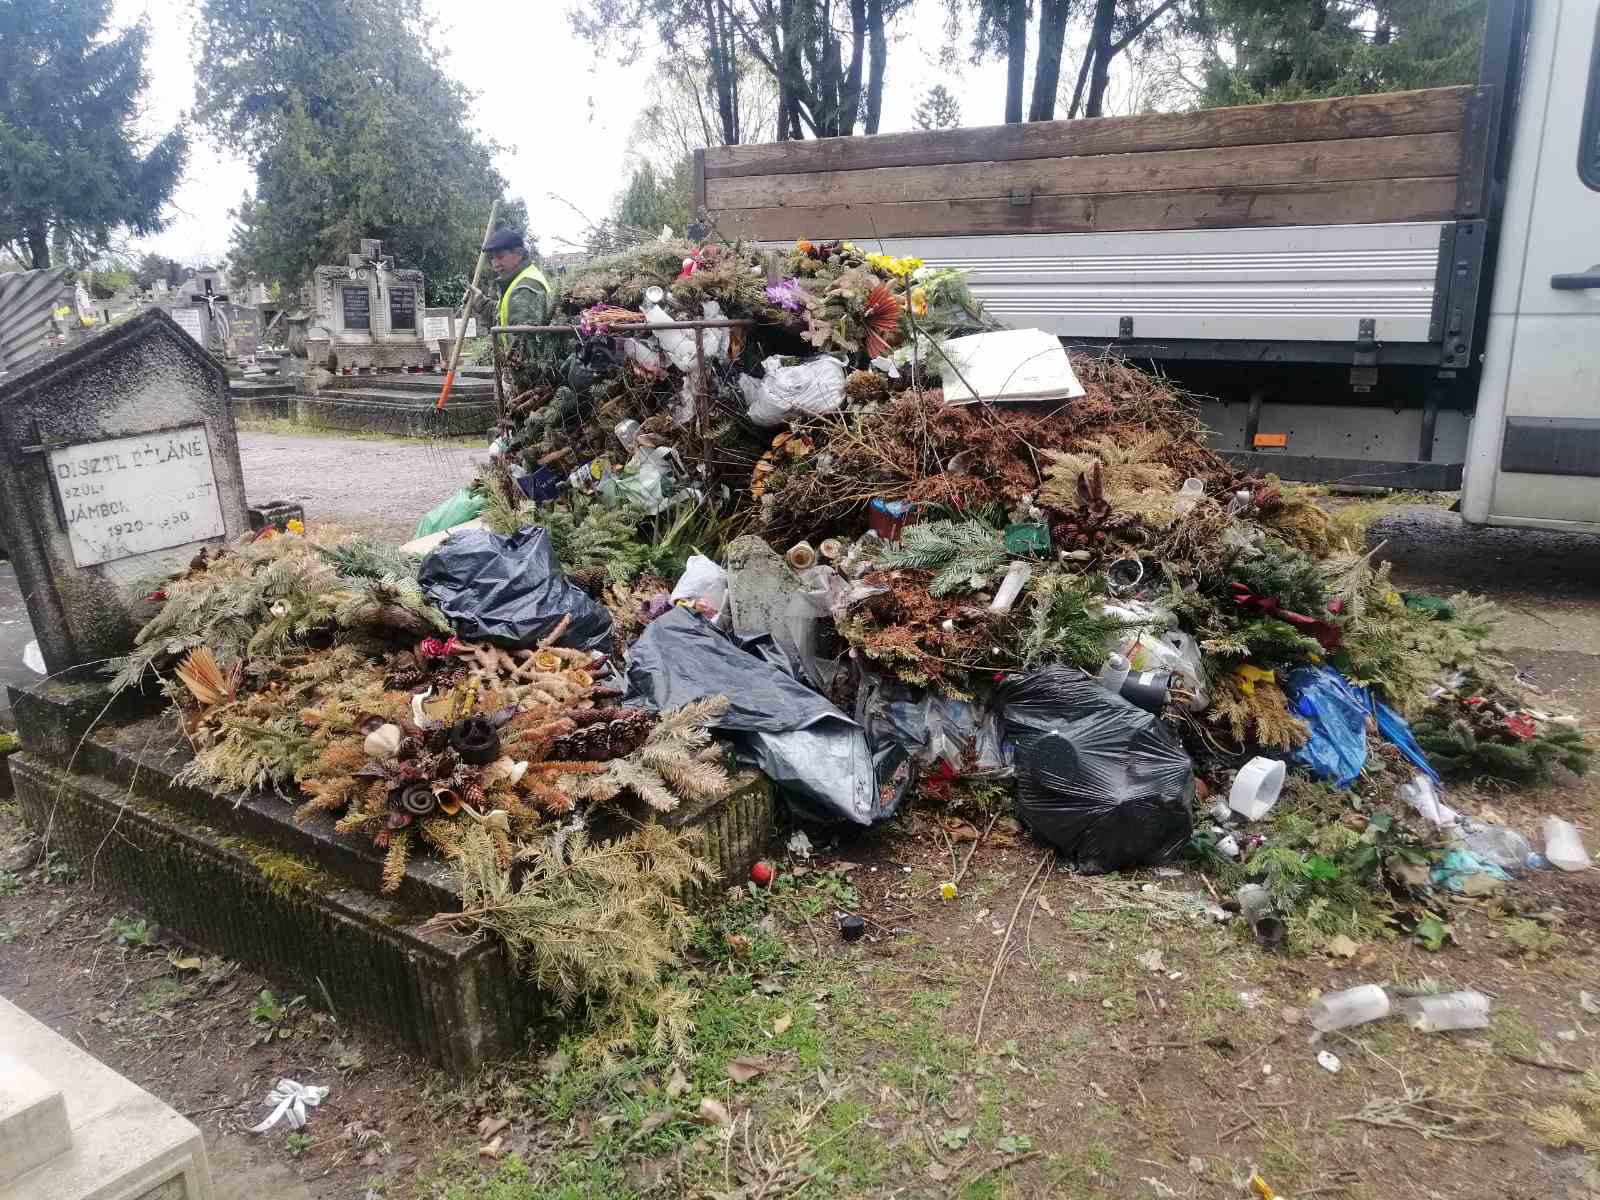 20210414 hulladékok gyüjtése egyházi temetőben2 optimized